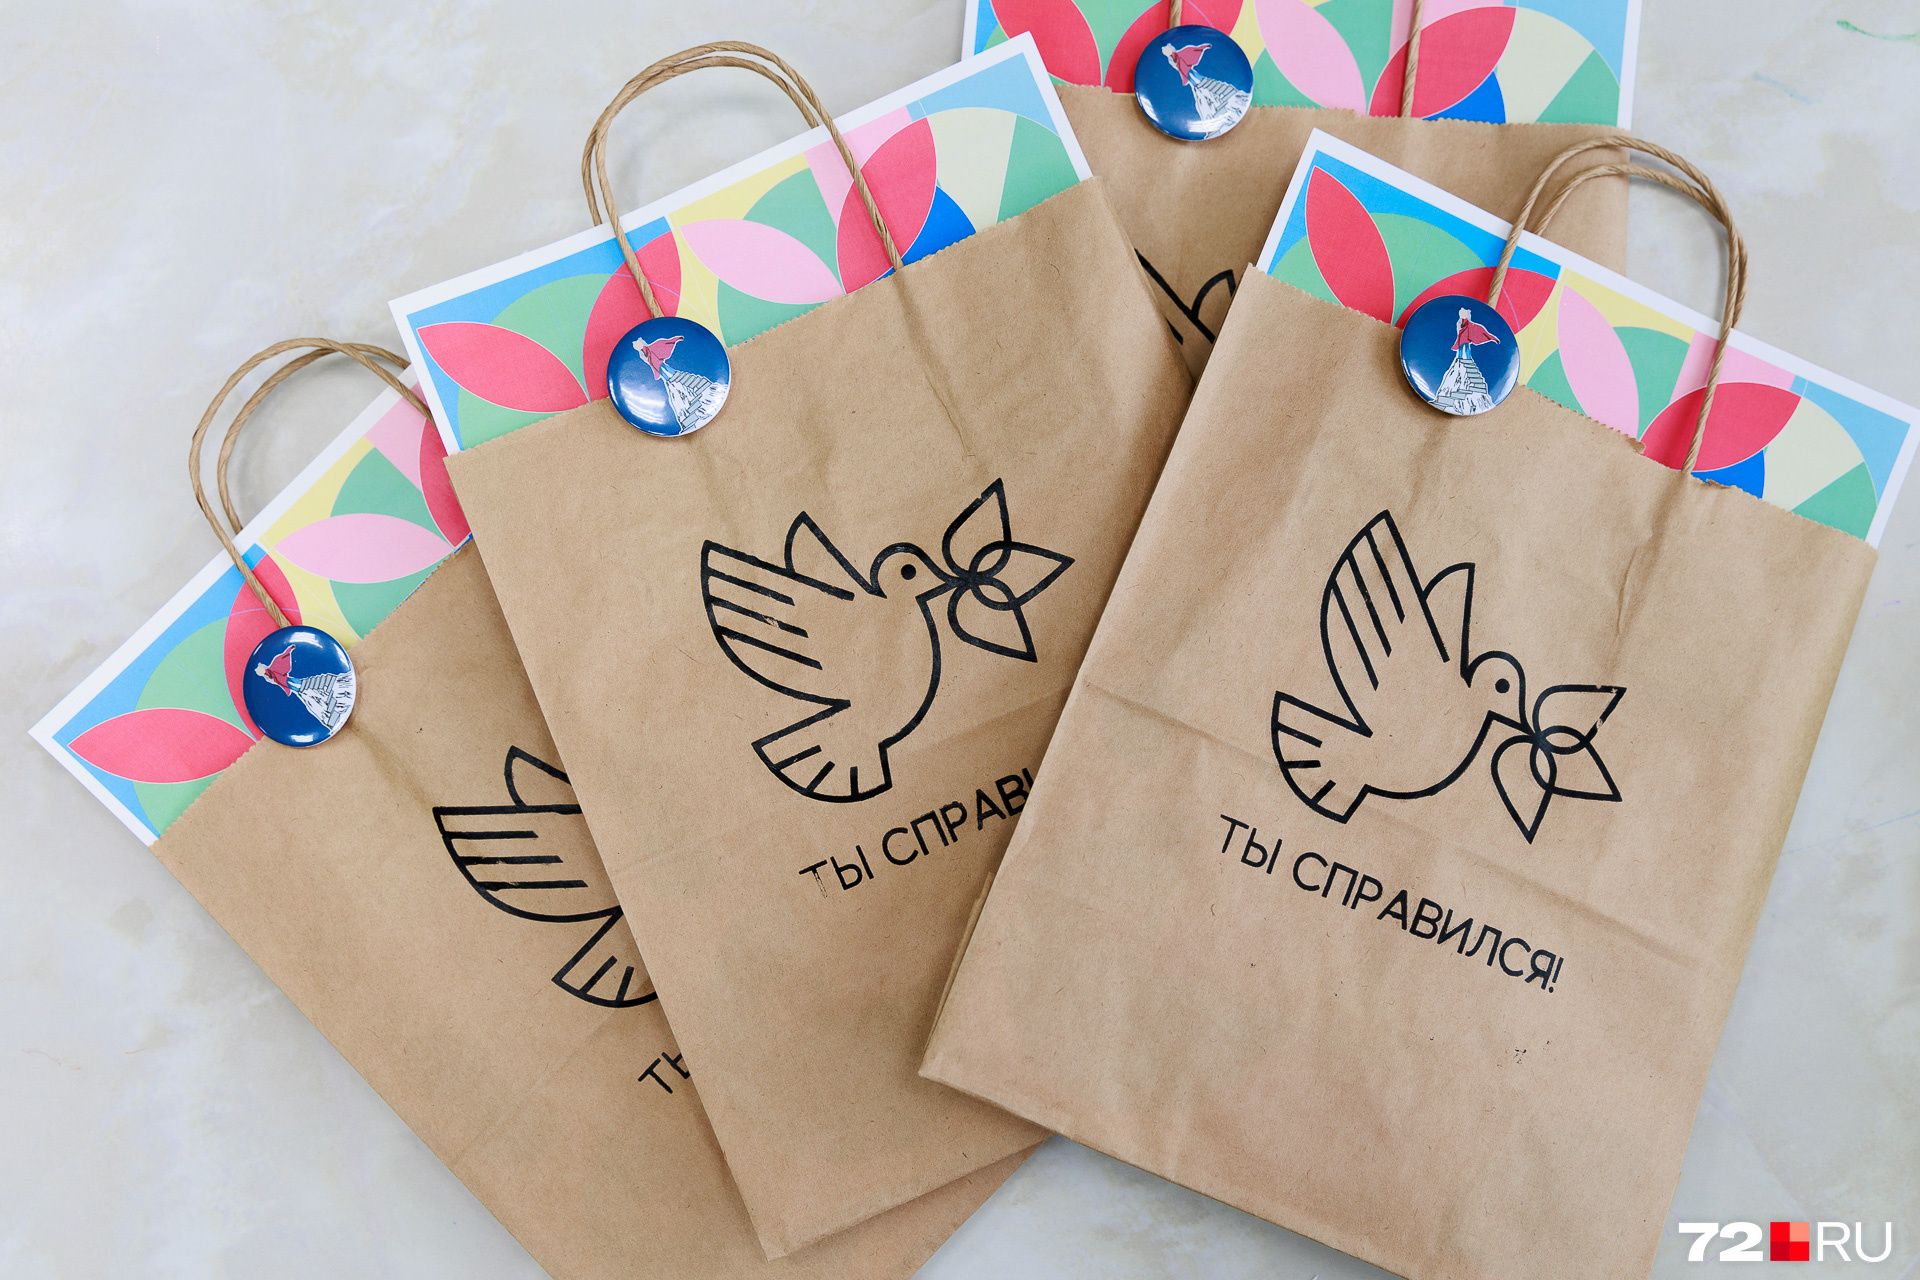 Каждый подарок упакован в крафт-пакет с изображением птицы с трехлистником в клюве. Этот символ очень близок Татьяне, тесно связан с ее личной историей